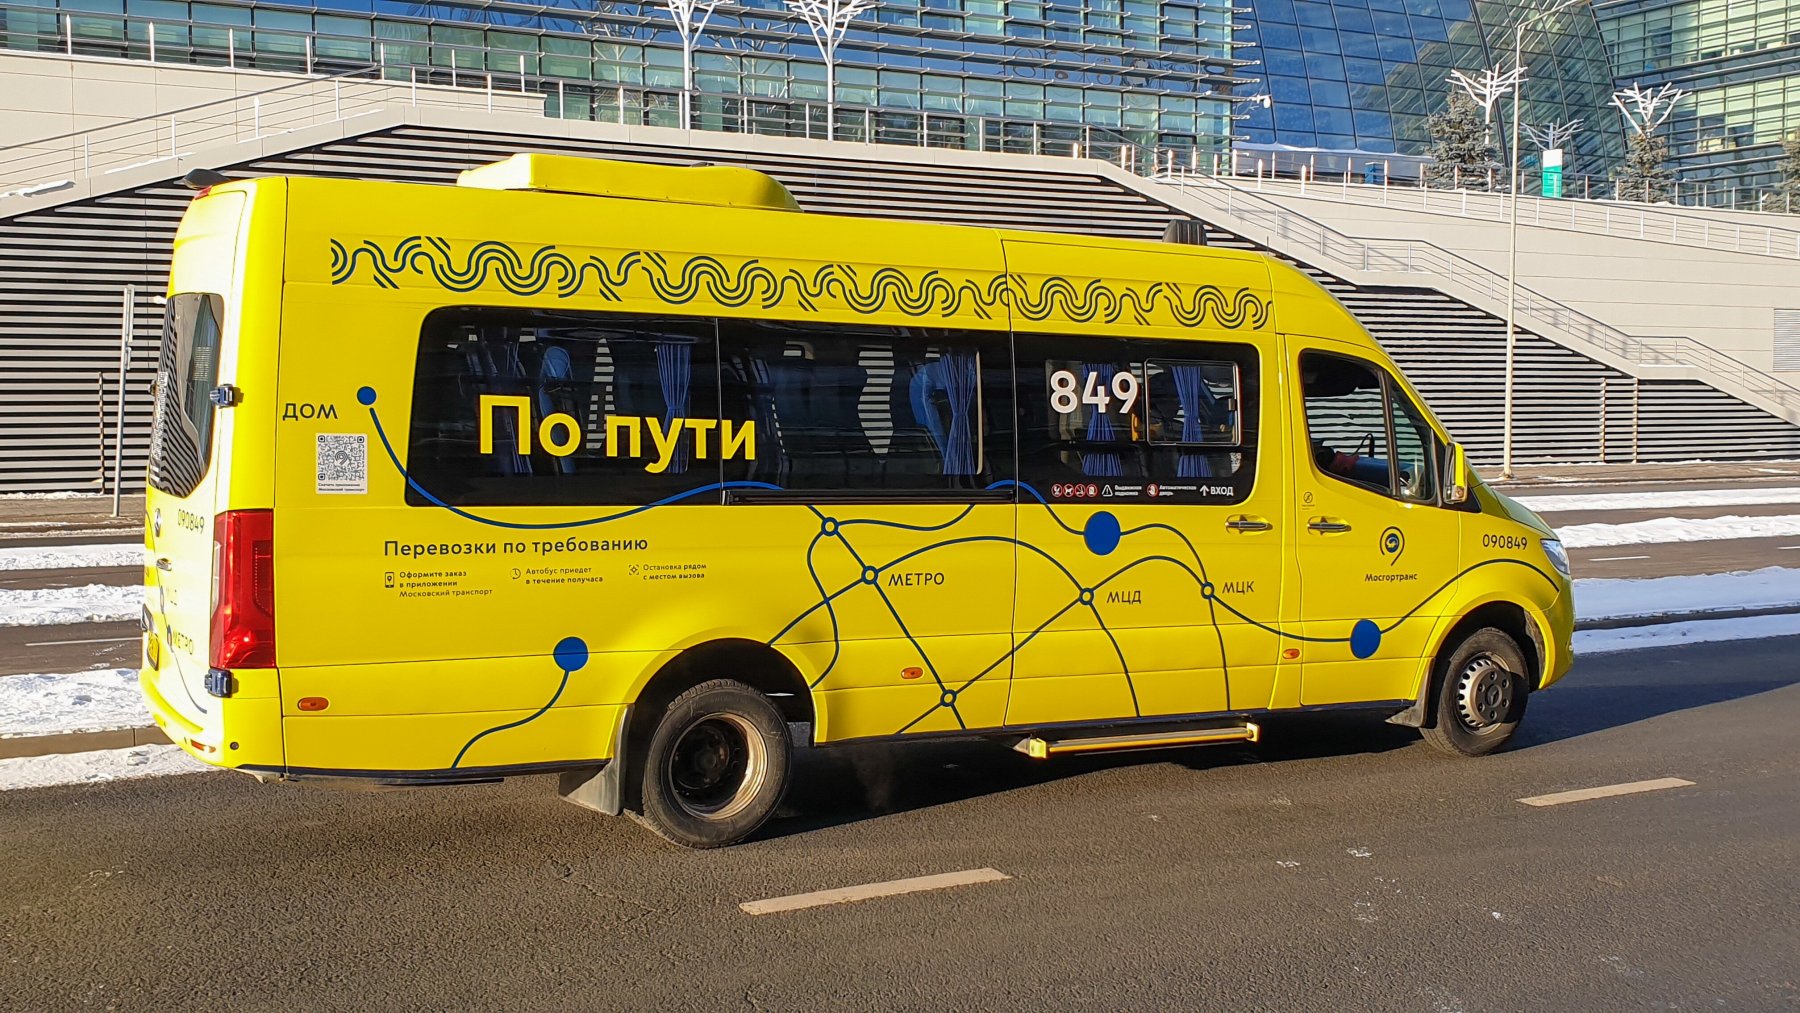 Автобусы сервиса «По пути» стали доступны для поездок между любыми остановками в зоне обслуживания